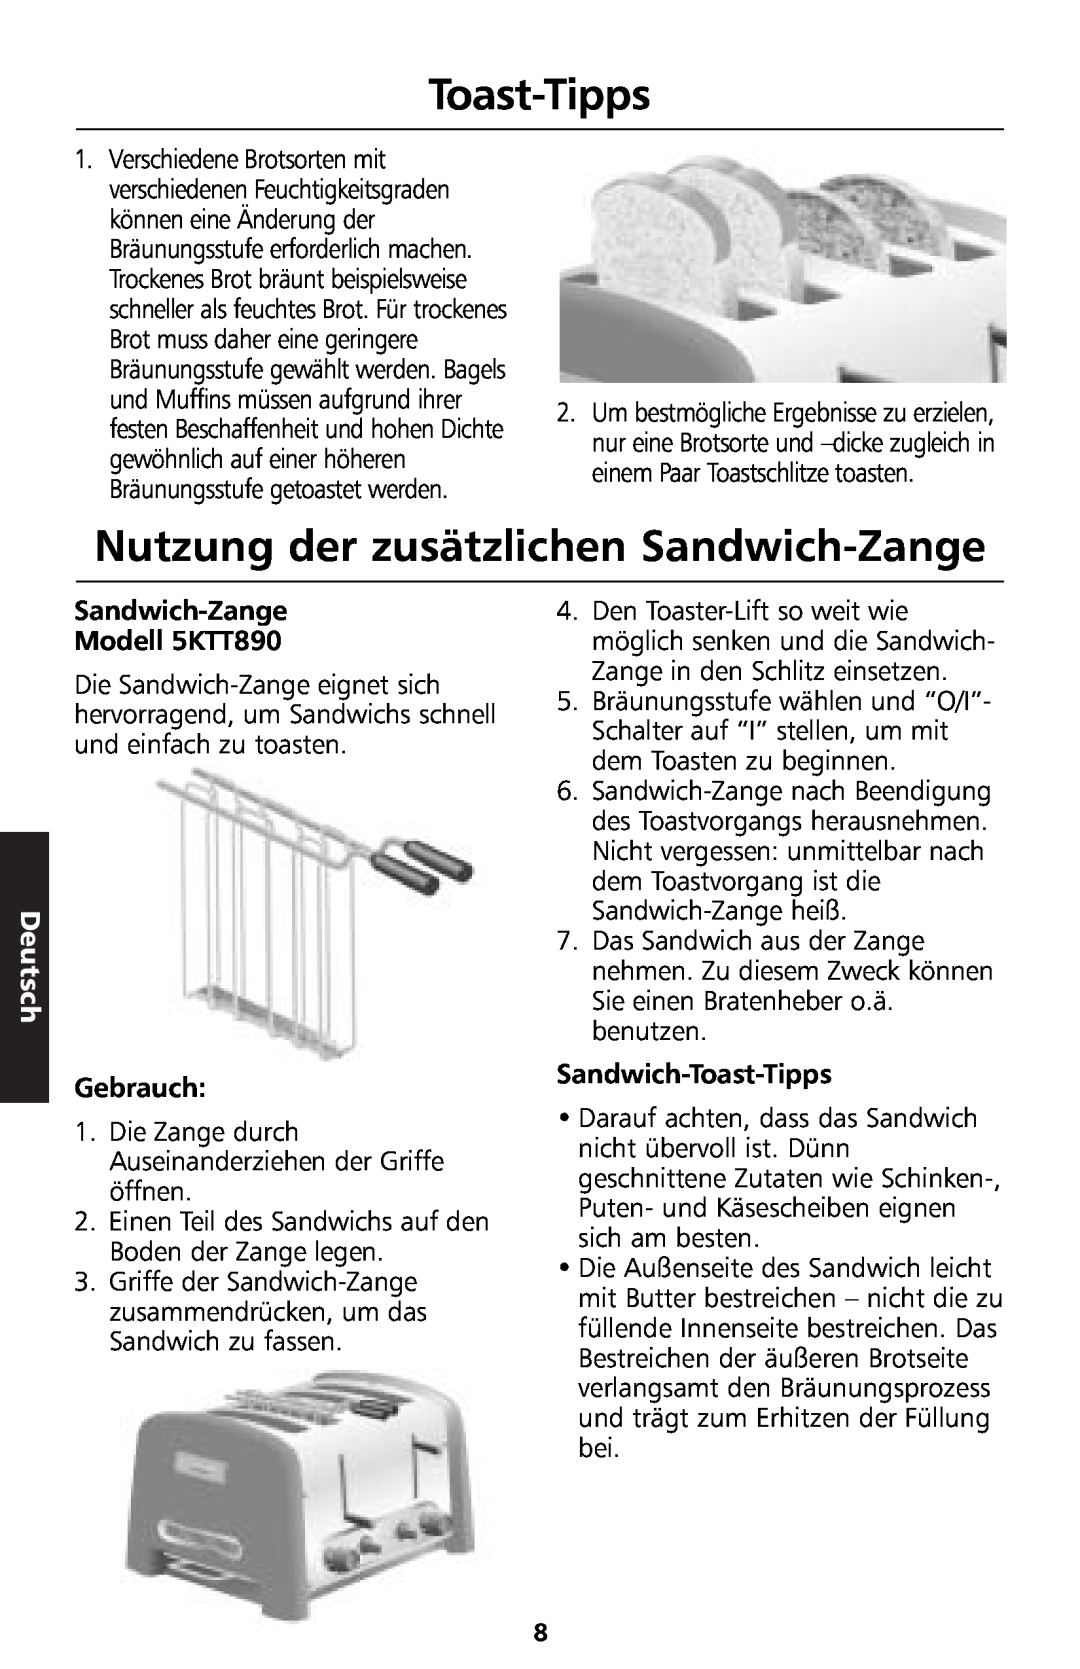 KitchenAid manual Toast-Tipps, Nutzung der zusätzlichen Sandwich-Zange, Deutsch, Sandwich-Zange Modell 5KTT890, Gebrauch 